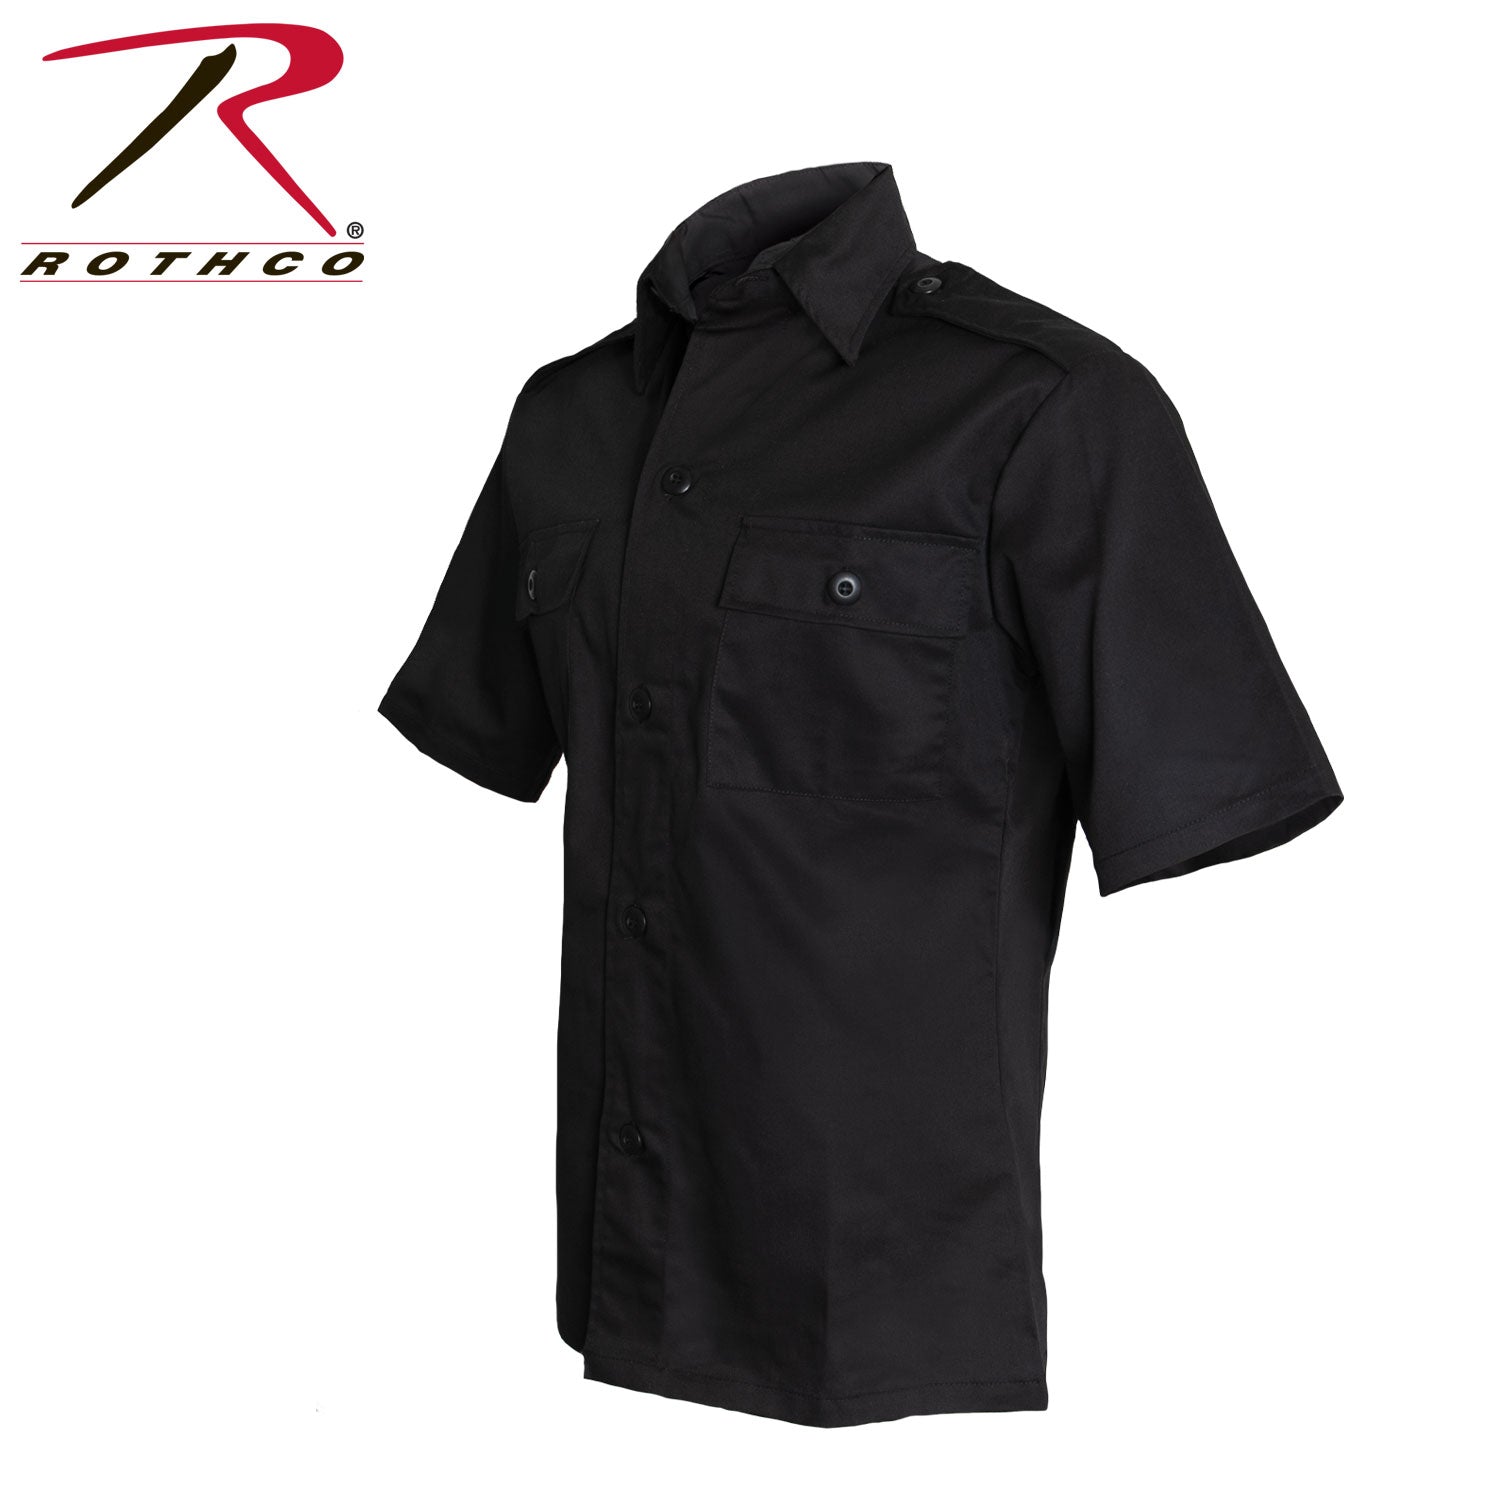 Rothco Short Sleeve Tactical Shirt